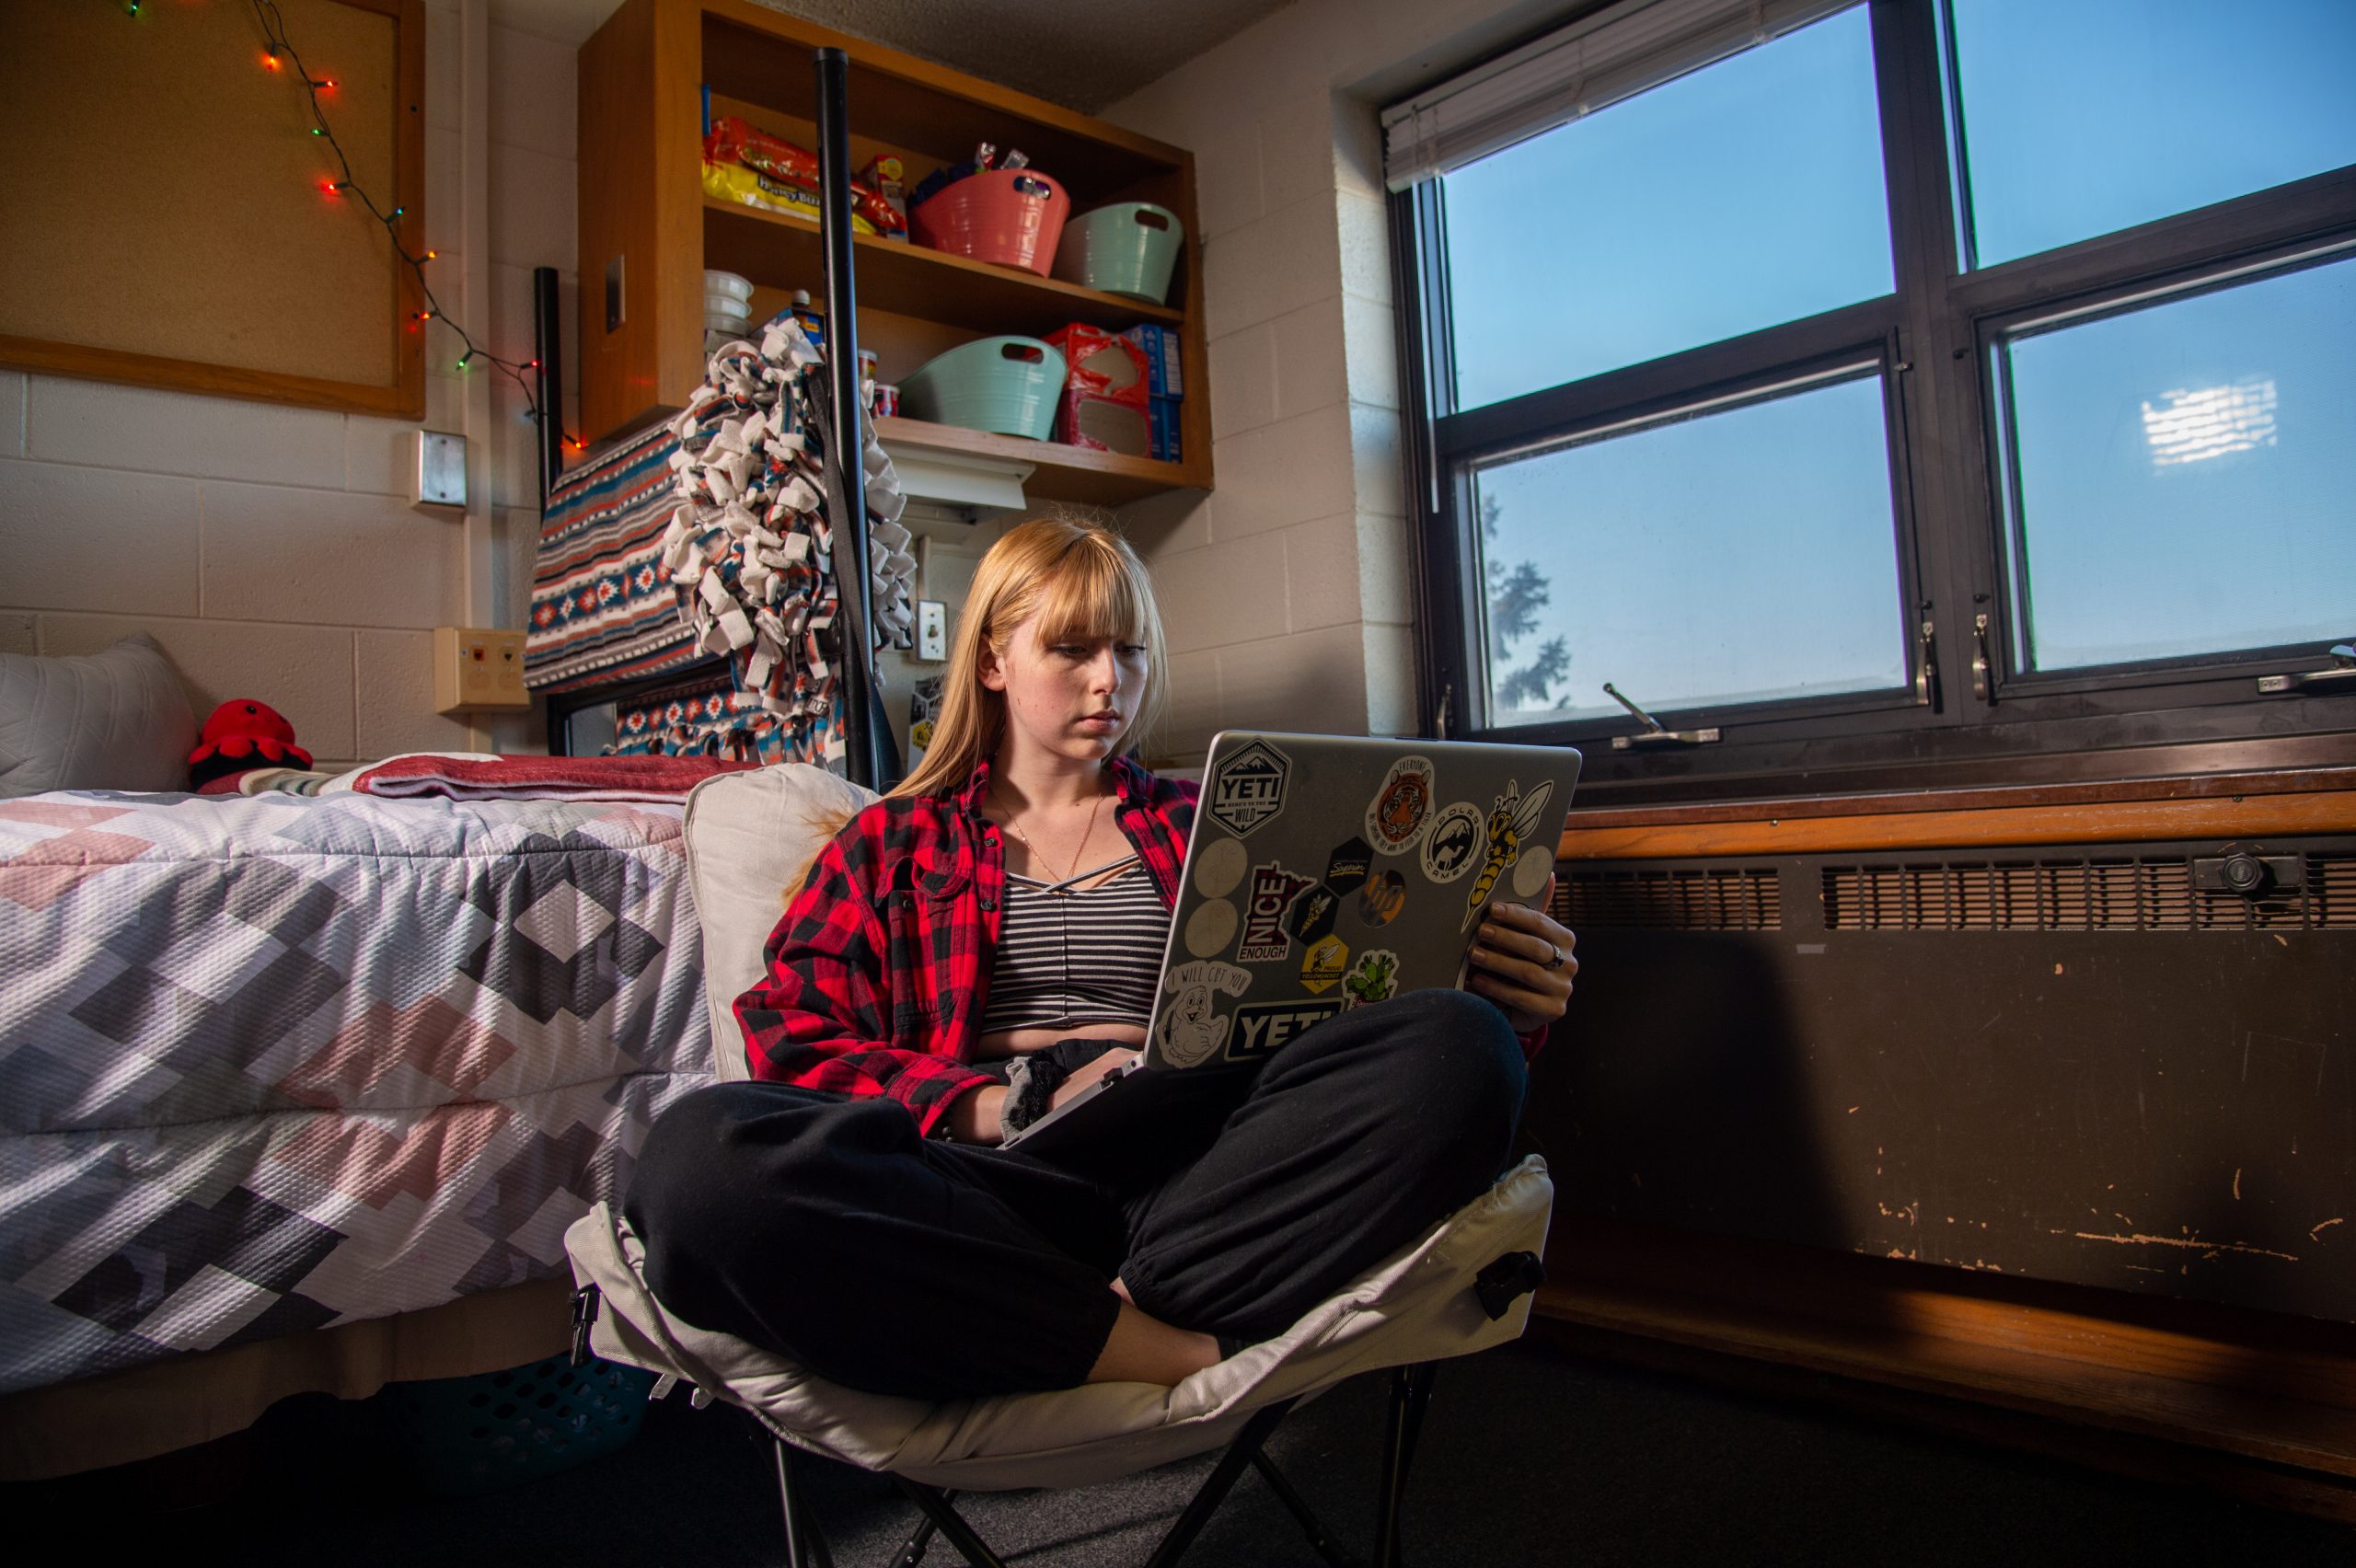 UWS student on her laptop in her dorm room.